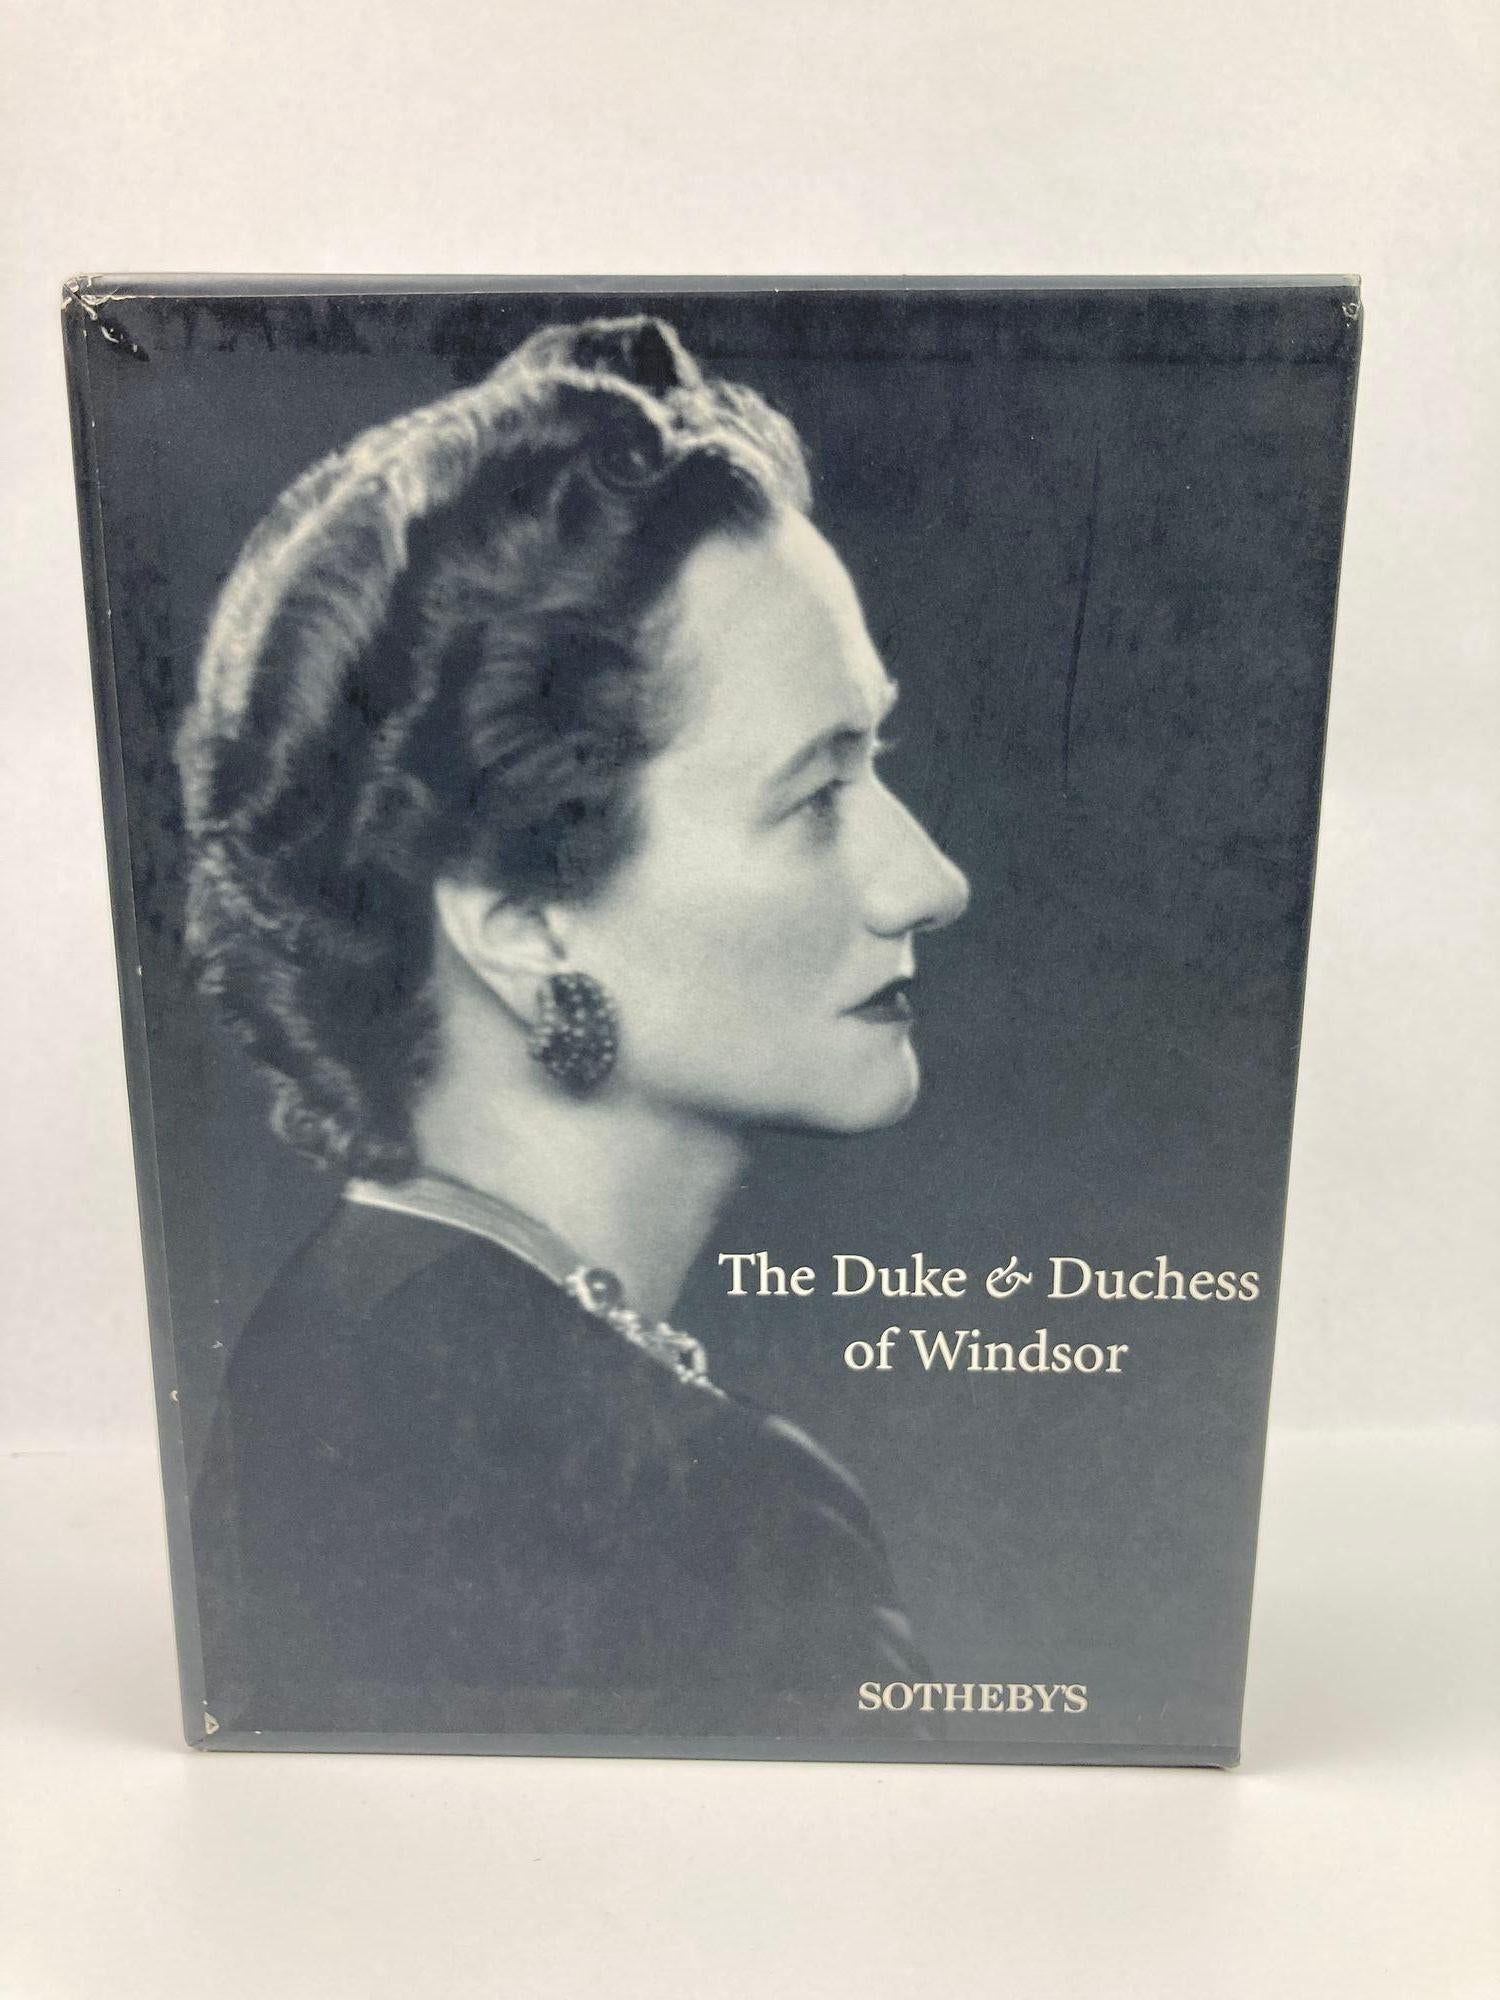 Américain The Duke and Duchess of Windsor Auction Sotheby's Books Catalogs in Slipcase Box (Le duc et la duchesse de Windsor, ventes aux enchères, catalogues de livres de Sotheby's dans une boîte) en vente